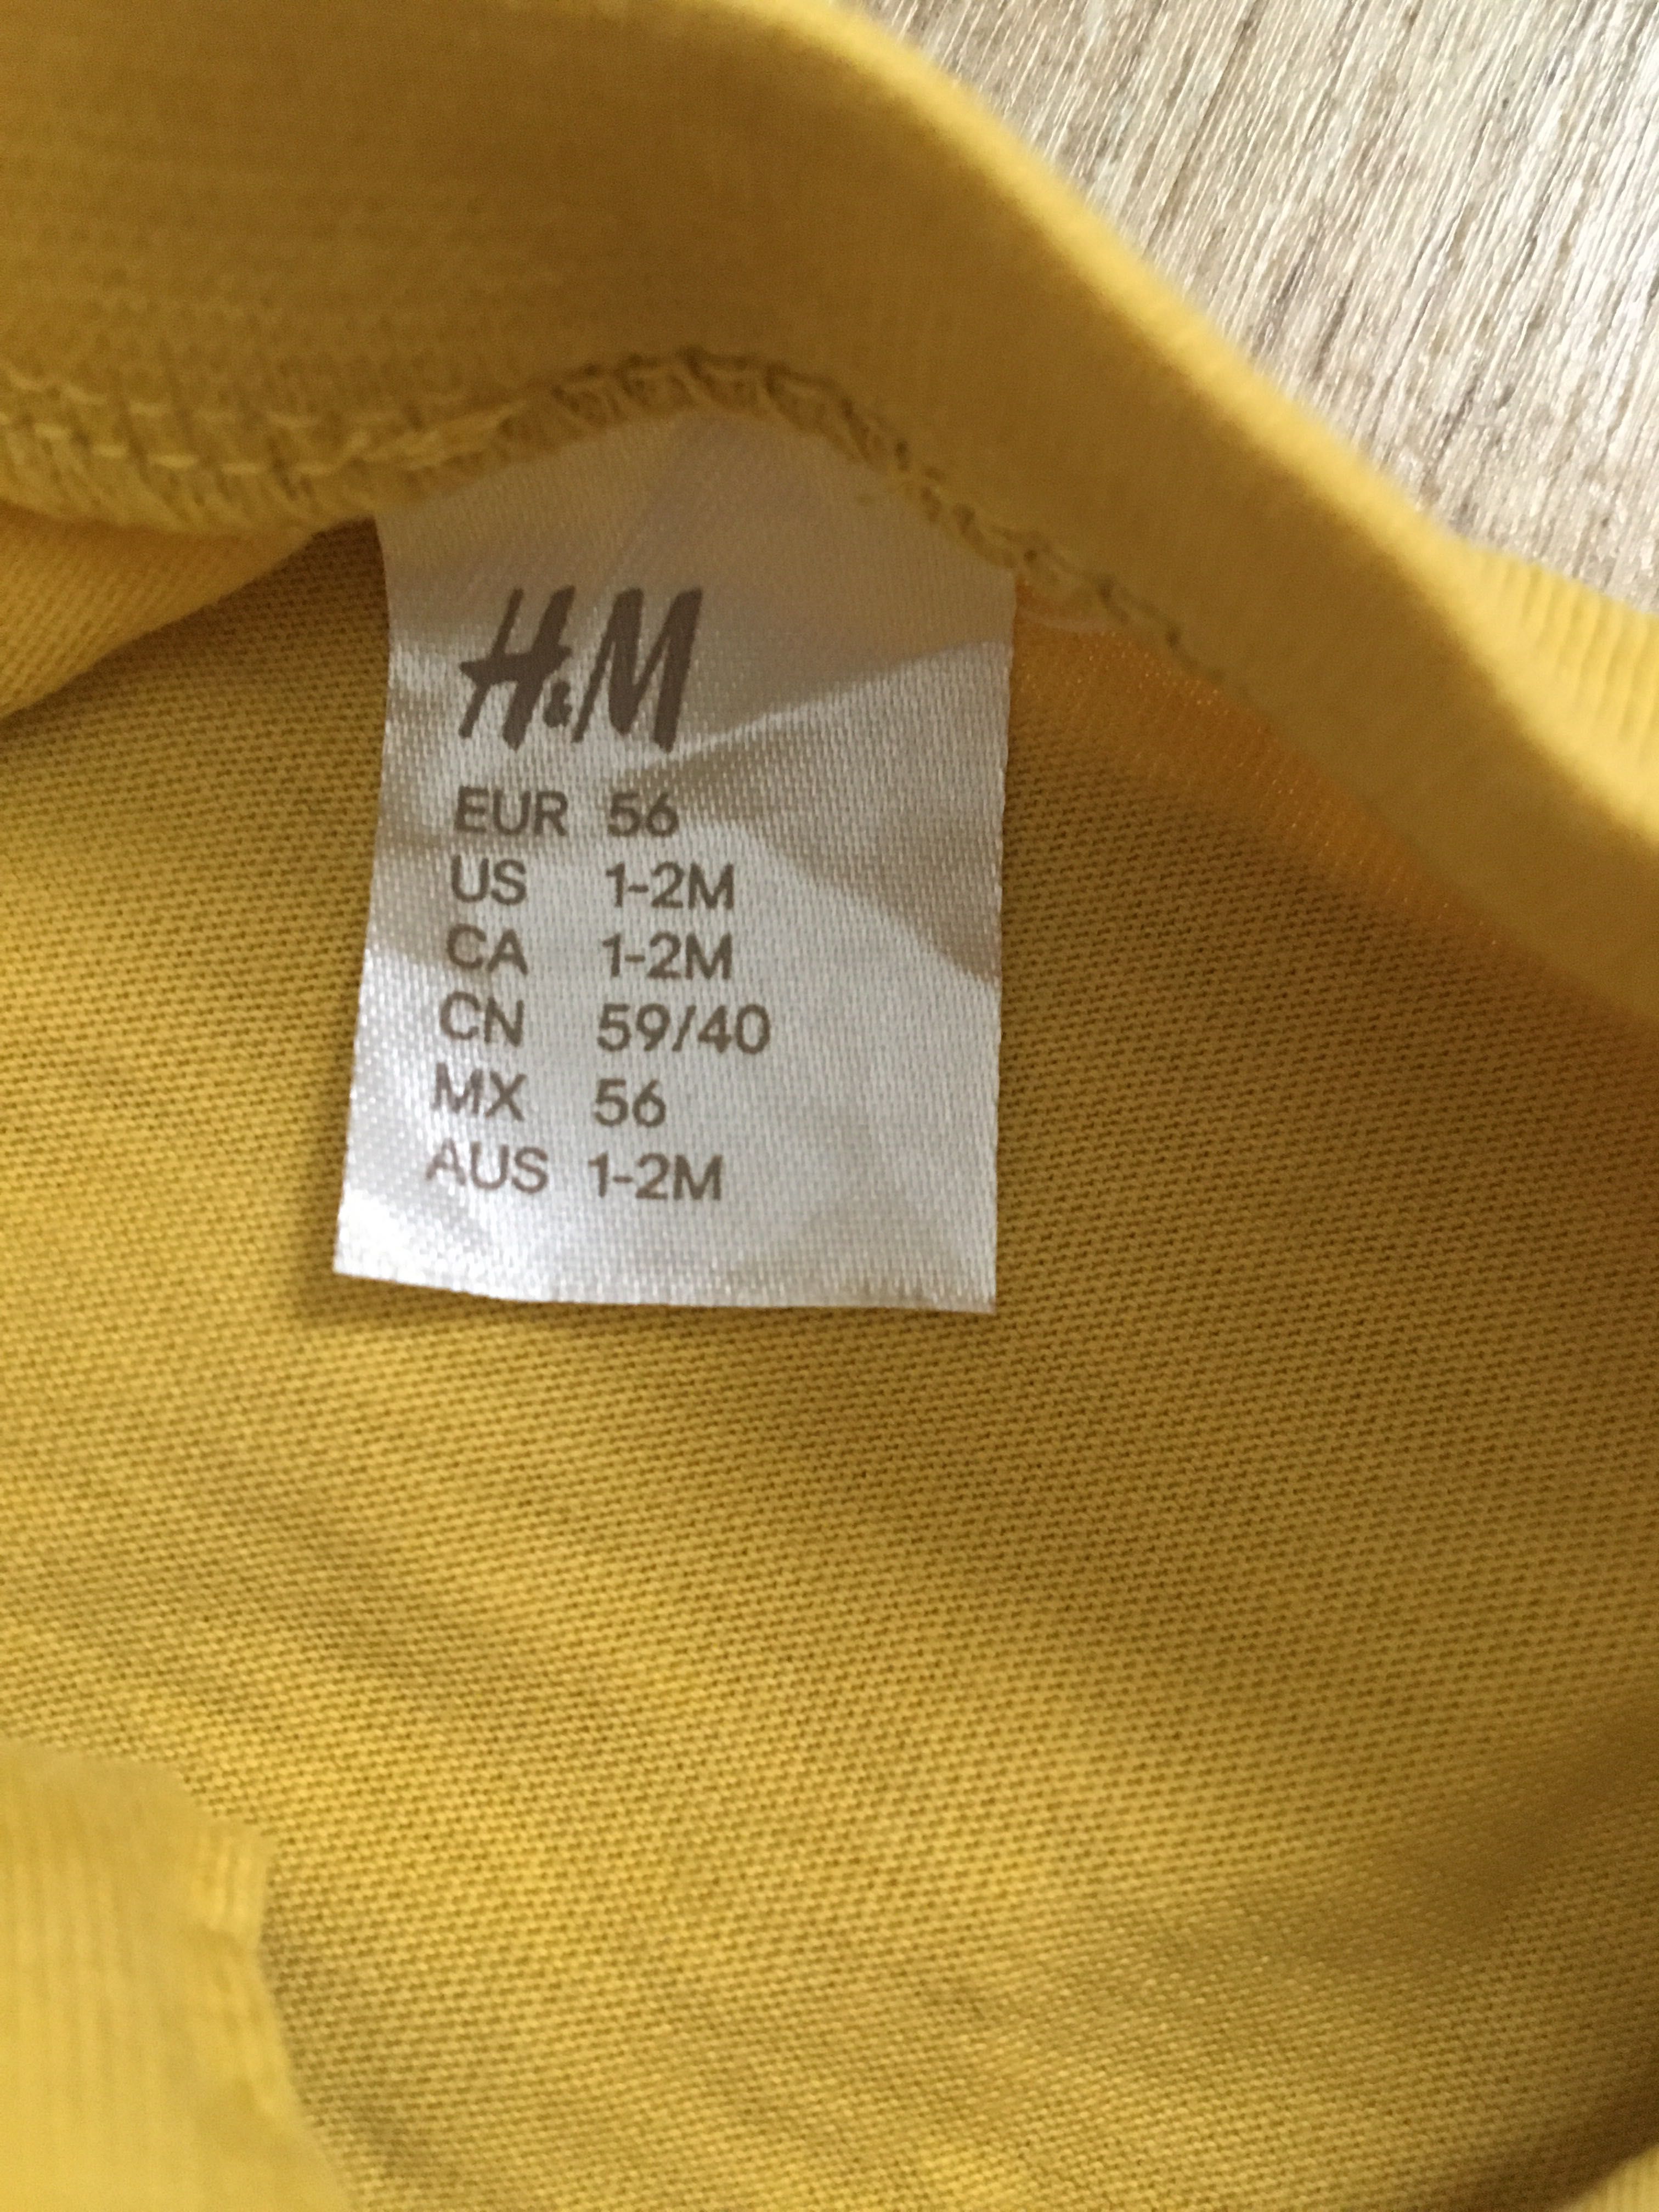 Musztardowy żółty bawełniany letni rampers krótki kombinezon H&M 56